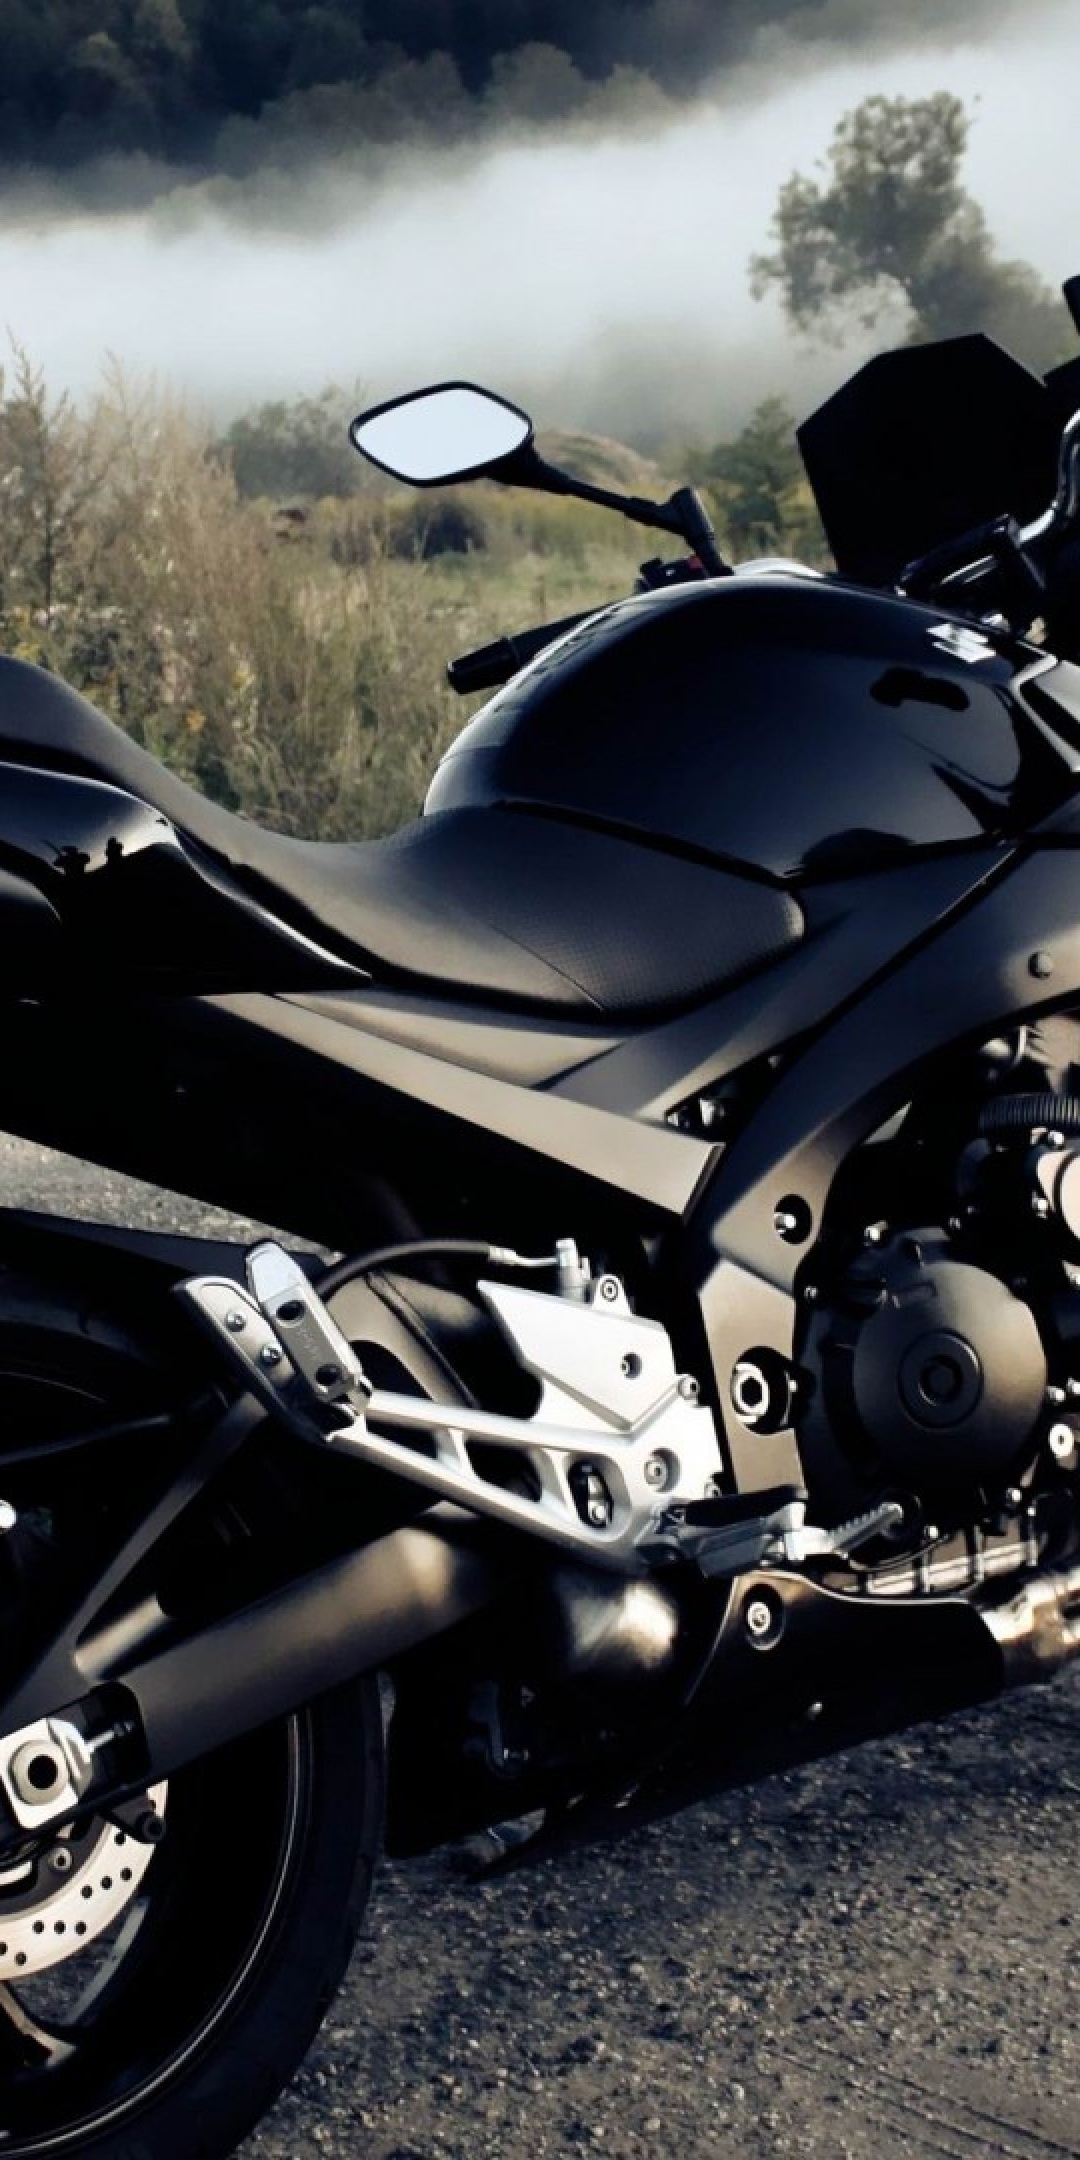 Image: Motorcycle, black bike, field, fog